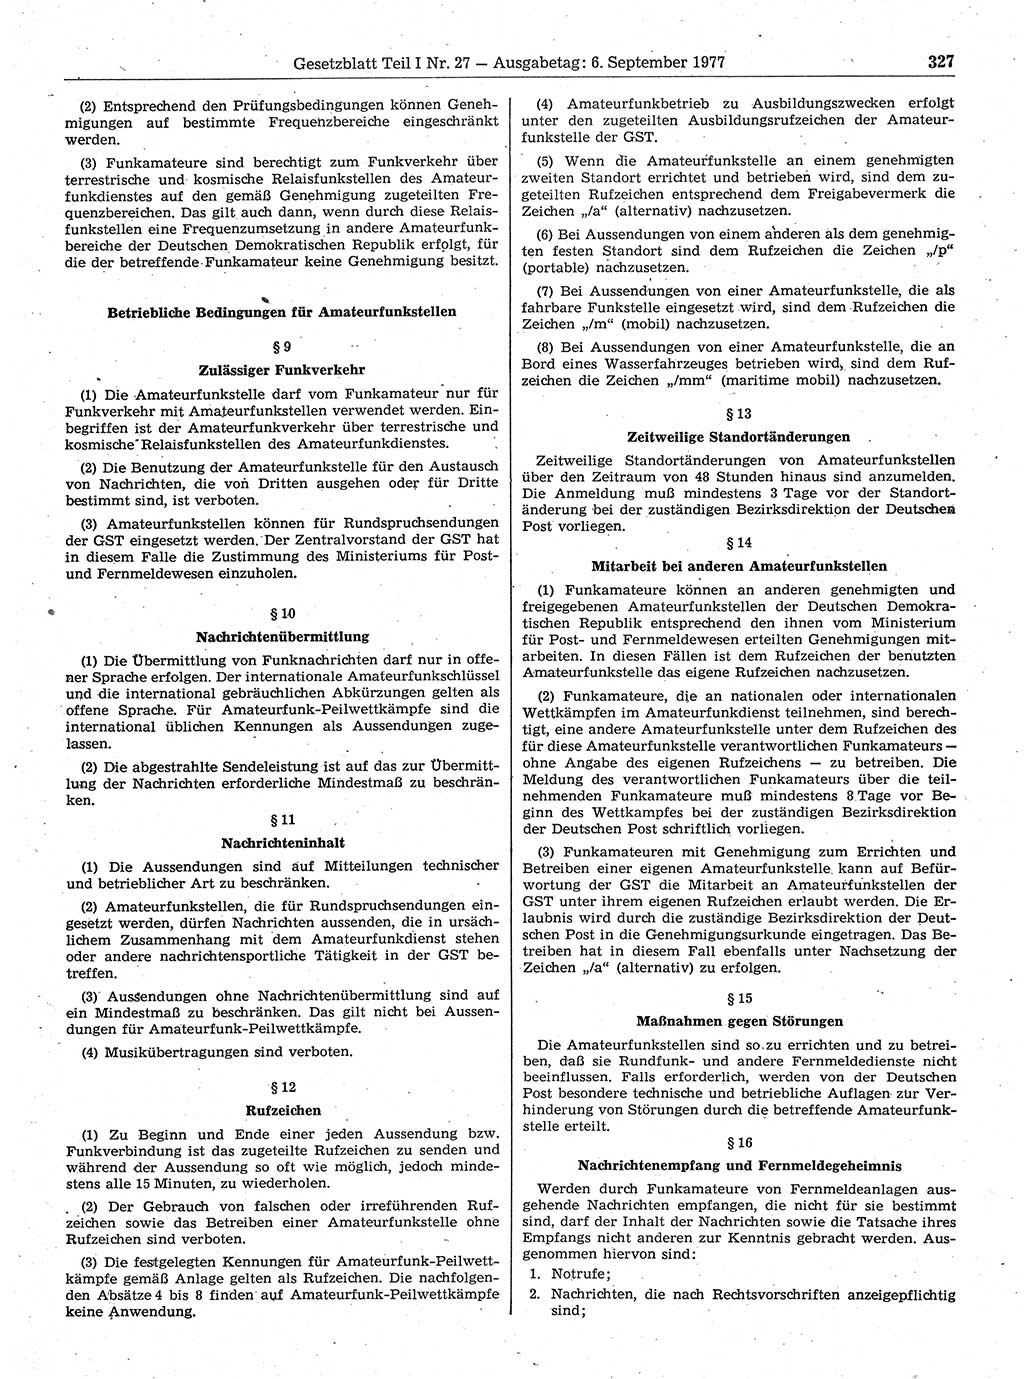 Gesetzblatt (GBl.) der Deutschen Demokratischen Republik (DDR) Teil Ⅰ 1977, Seite 327 (GBl. DDR Ⅰ 1977, S. 327)